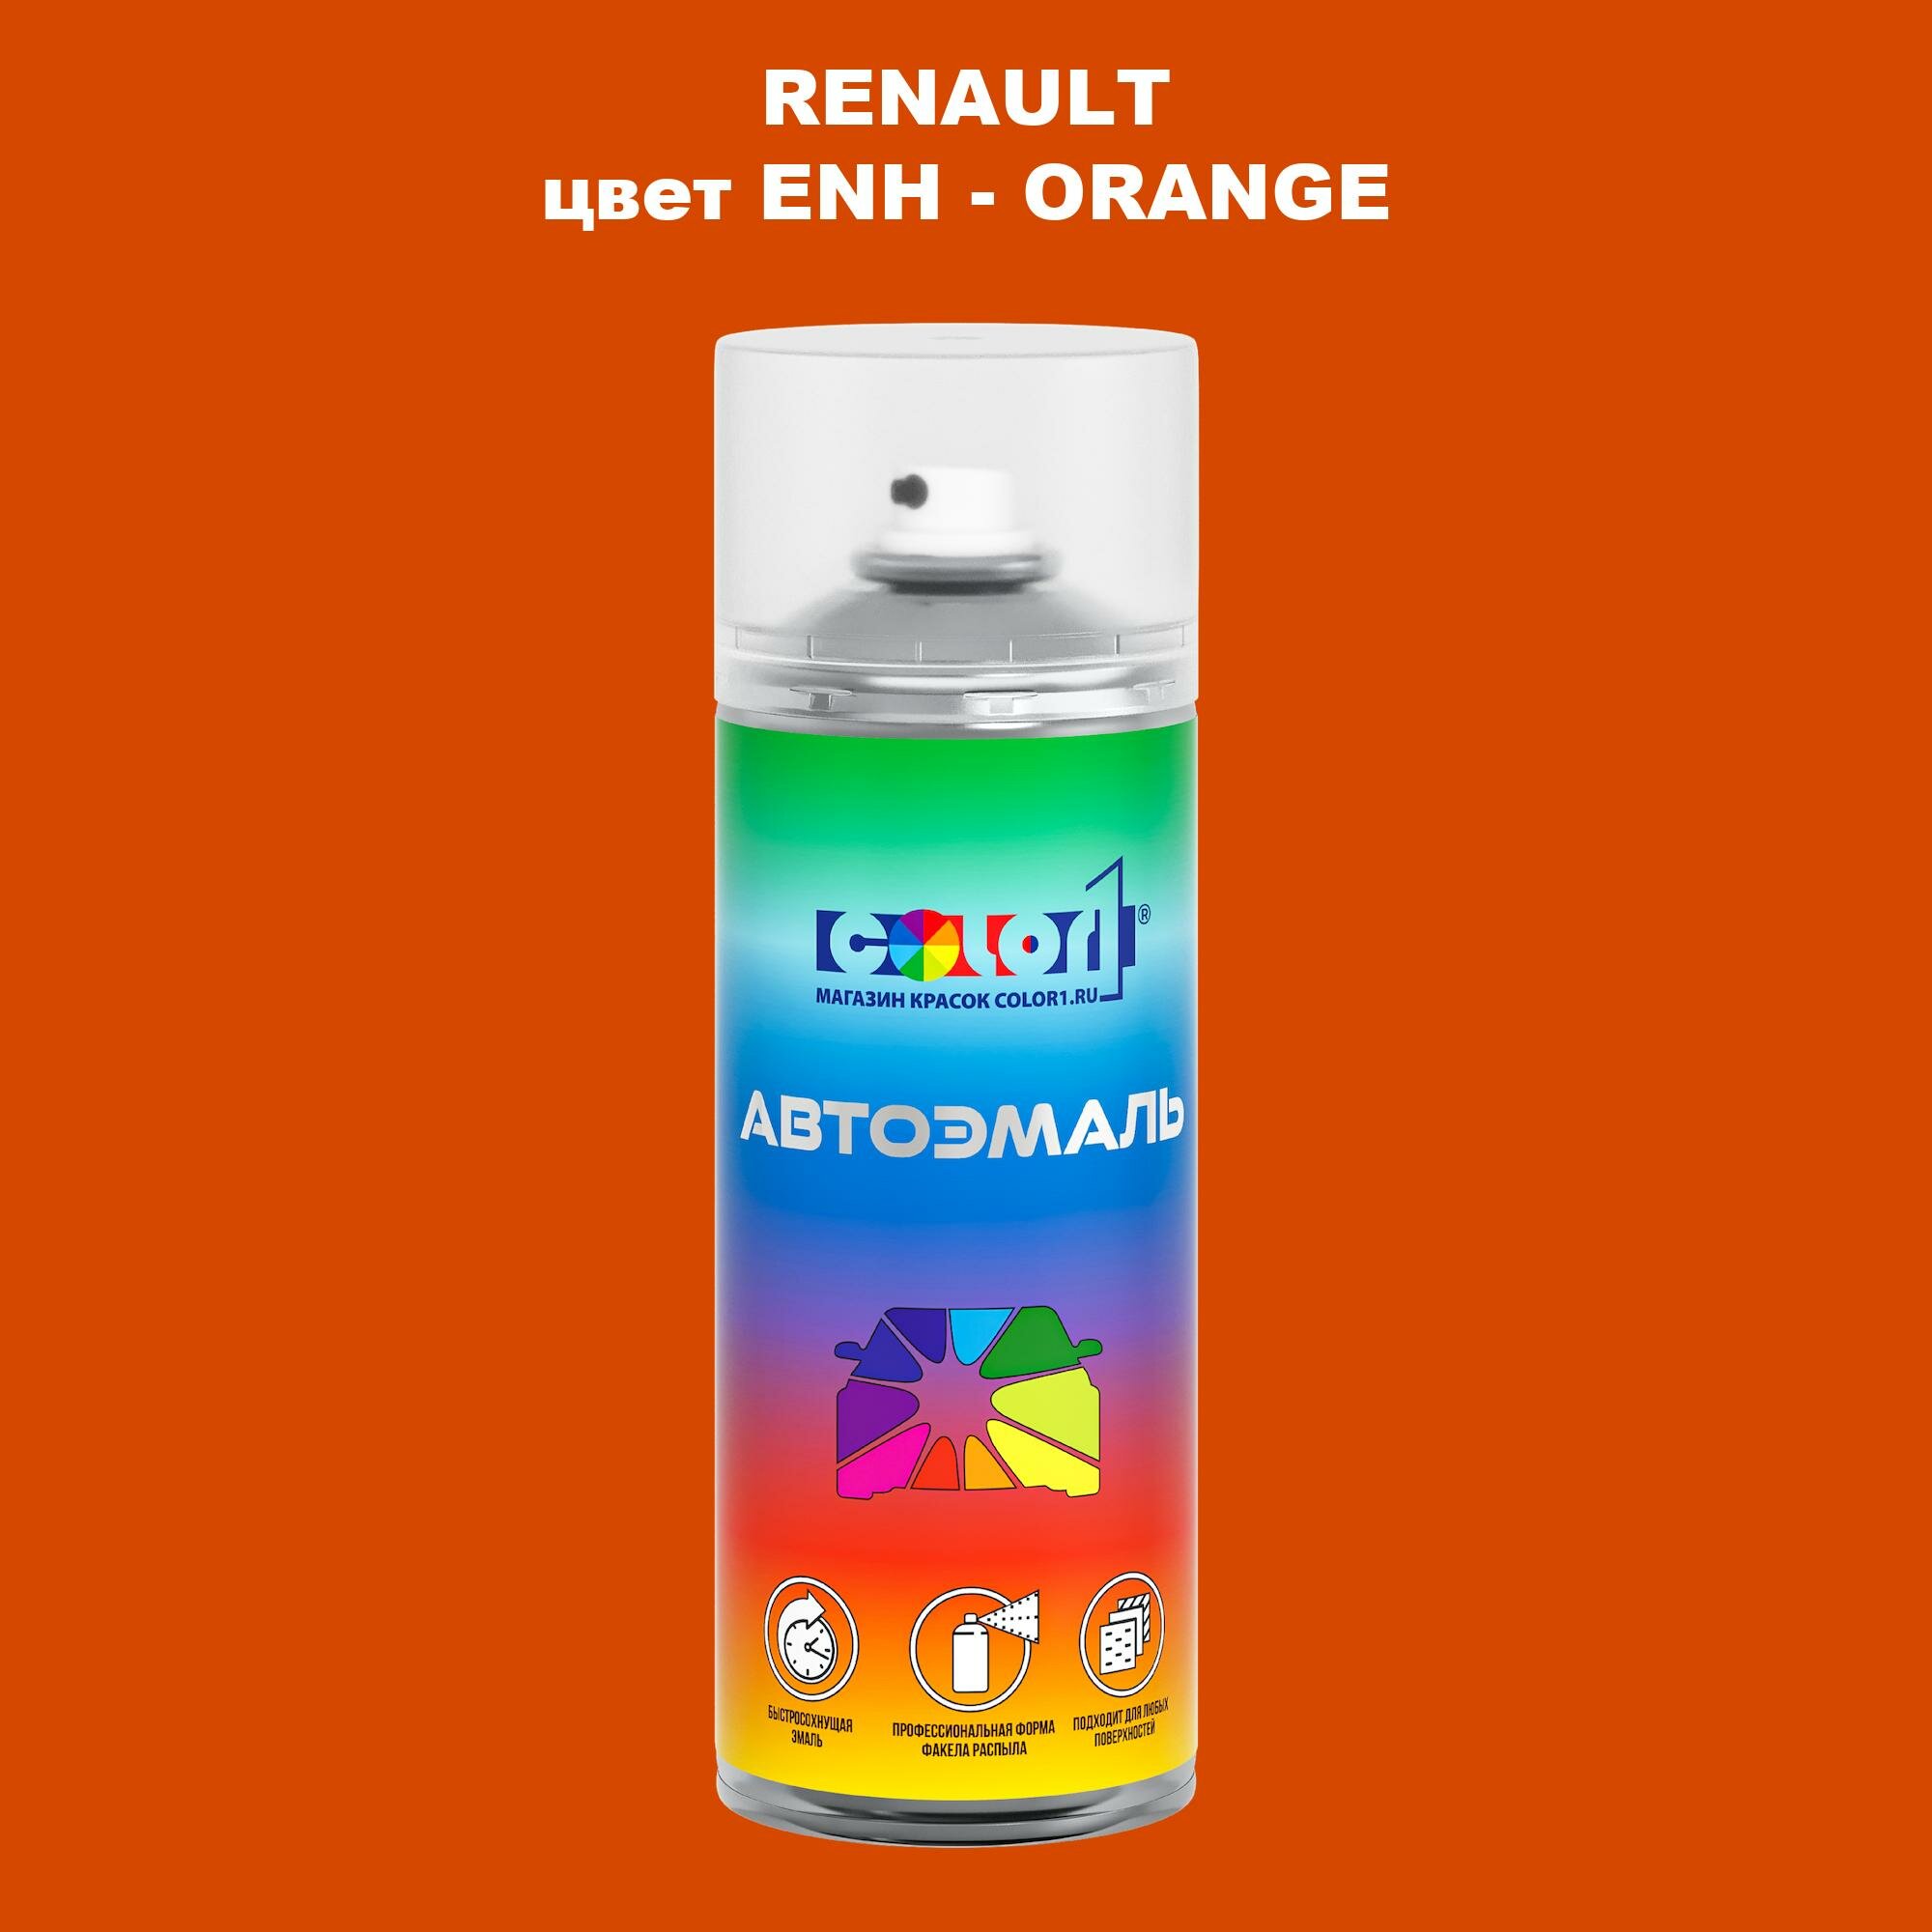 Аэрозольная краска COLOR1 для RENAULT, цвет ENH - ORANGE